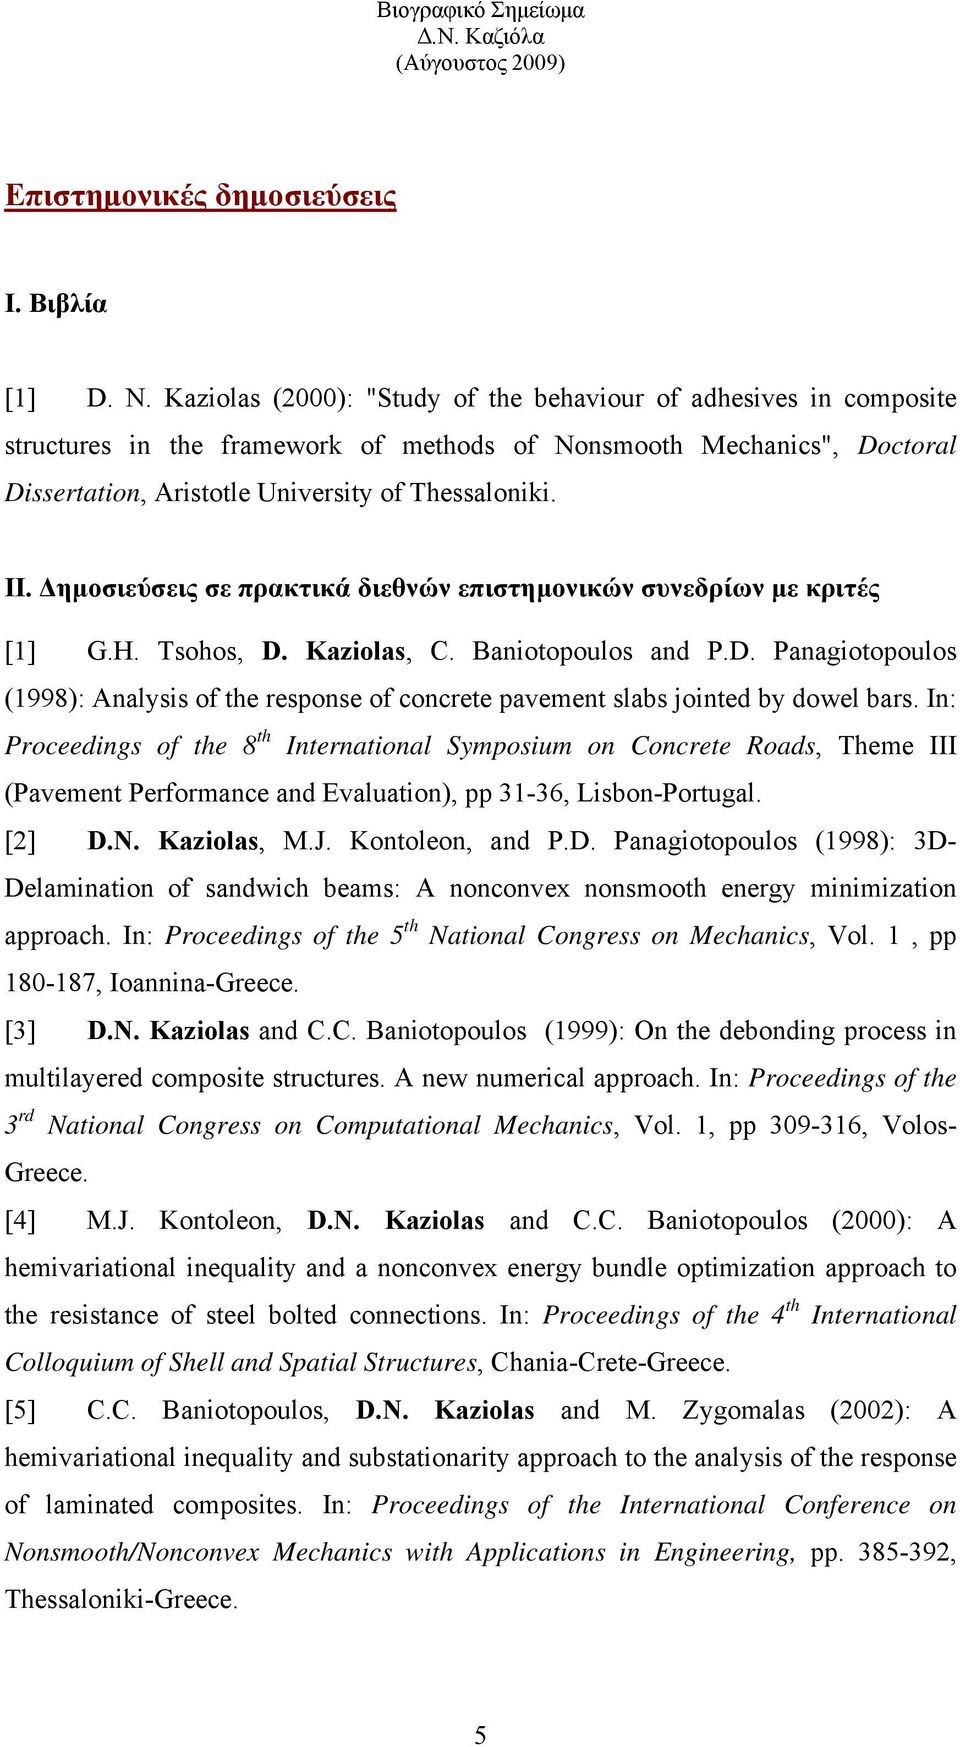 Δημοσιεύσεις σε πρακτικά διεθνών επιστημονικών συνεδρίων με κριτές [1] G.H. Tsohos, D. Kaziolas, C. Baniotopoulos and P.D. Panagiotopoulos (1998): Analysis of the response of concrete pavement slabs jointed by dowel bars.